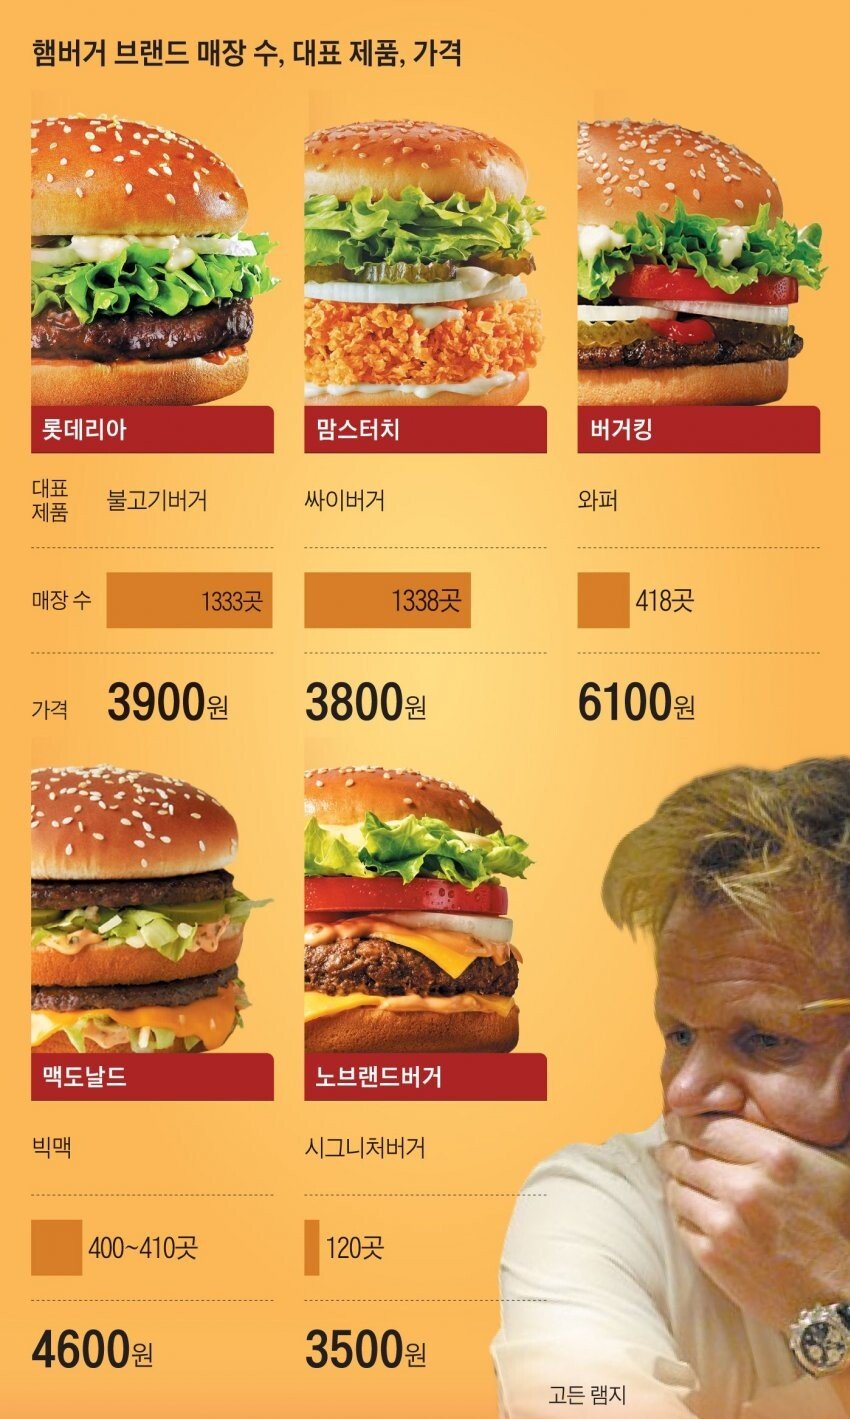 대한민국 햄버거 매장수 1등 변경